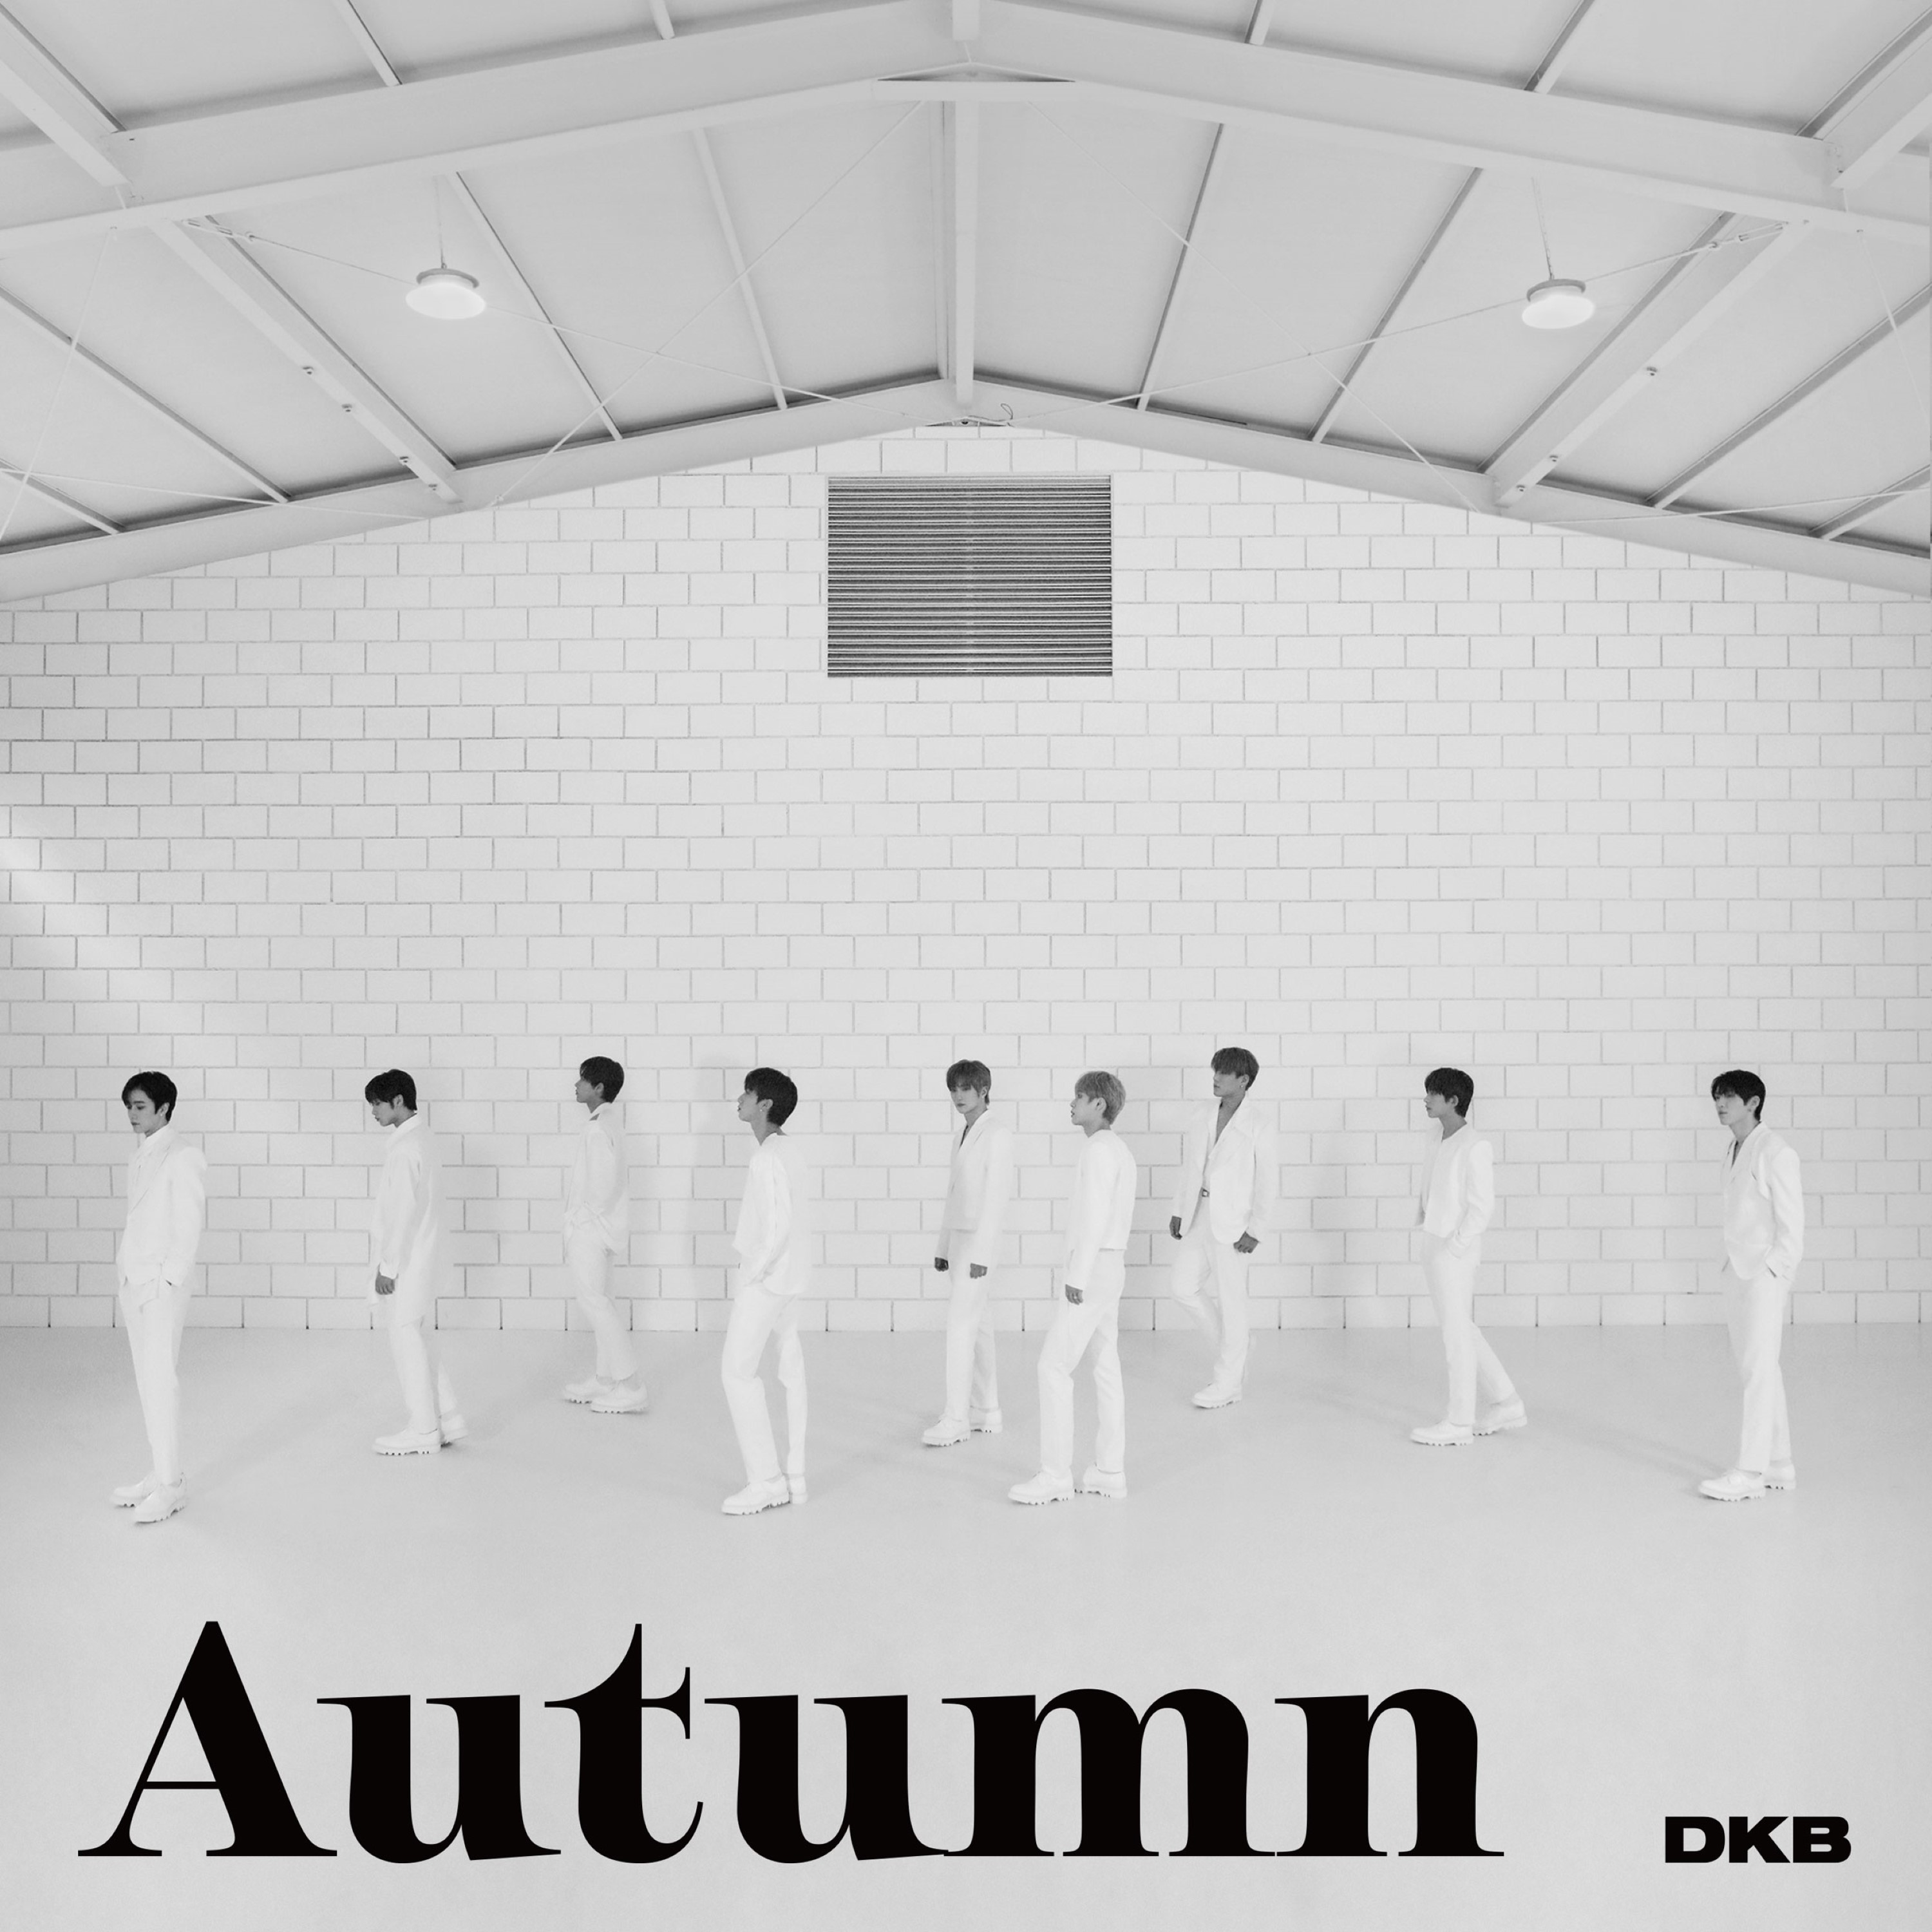 DKB Autumn Cover.jpg